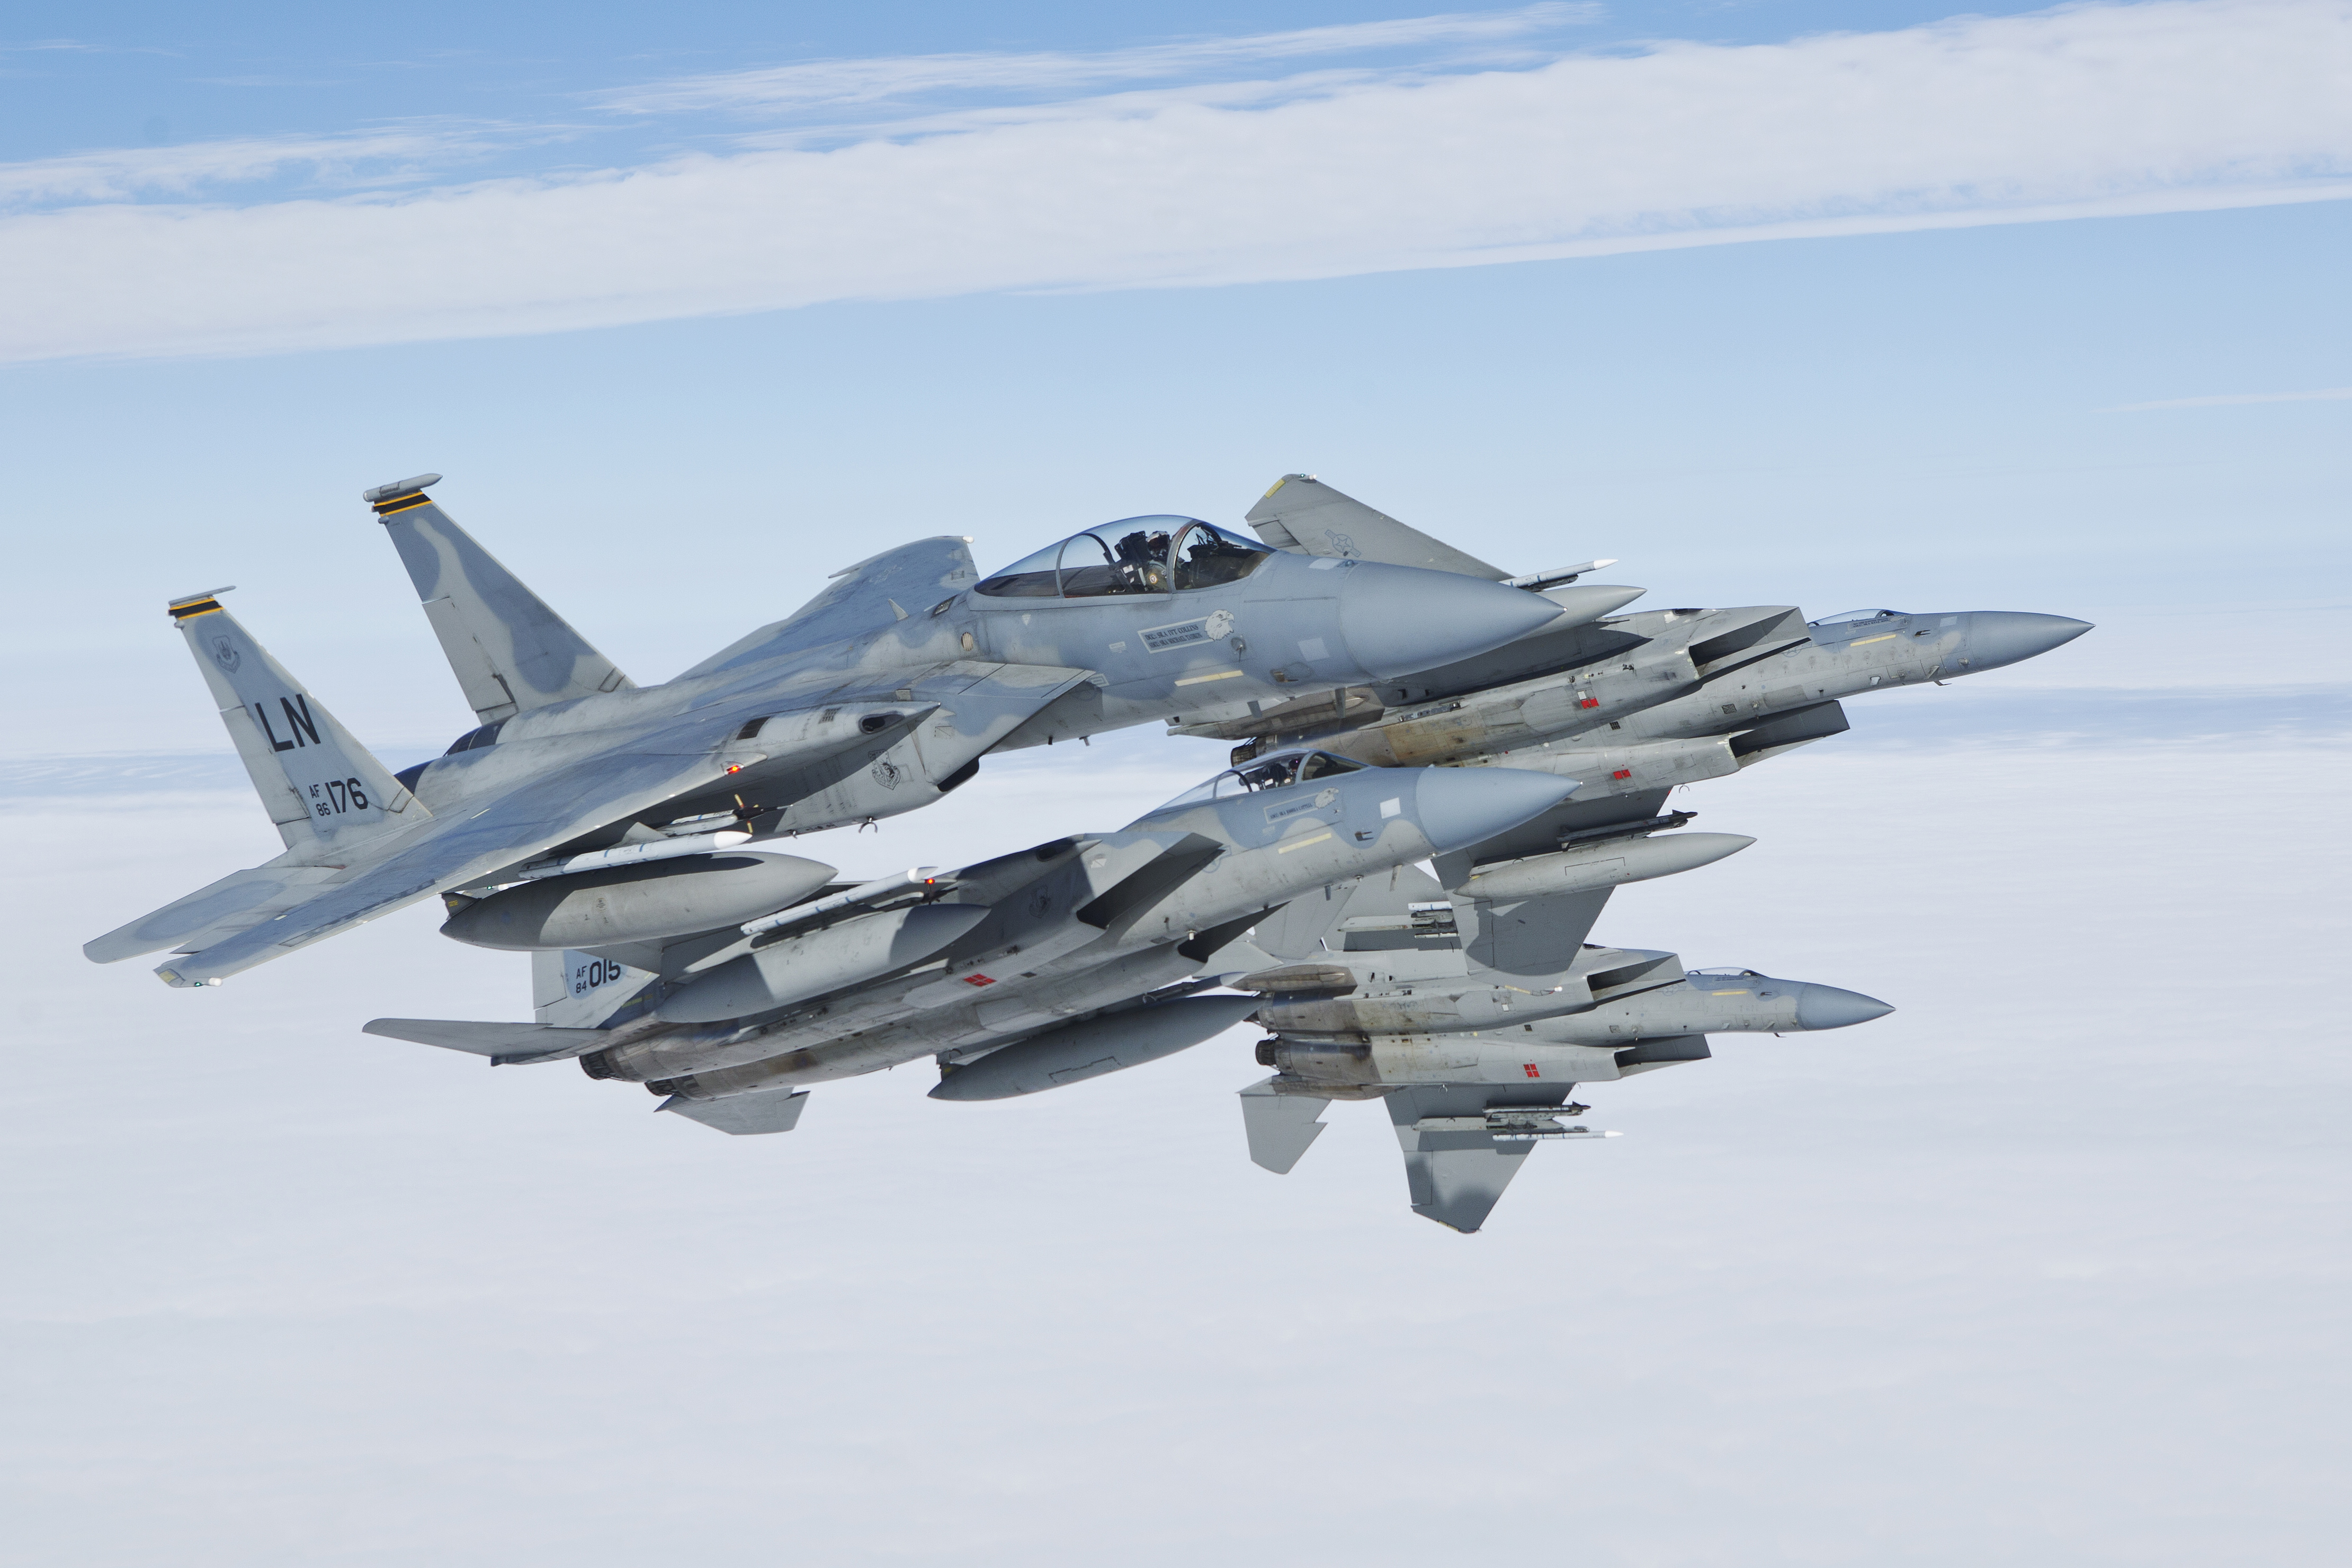 Войска НАТО втрое увеличили свое присутствие в странах Балтии: США перебросили мощнейшие истребители F-15C к границам России